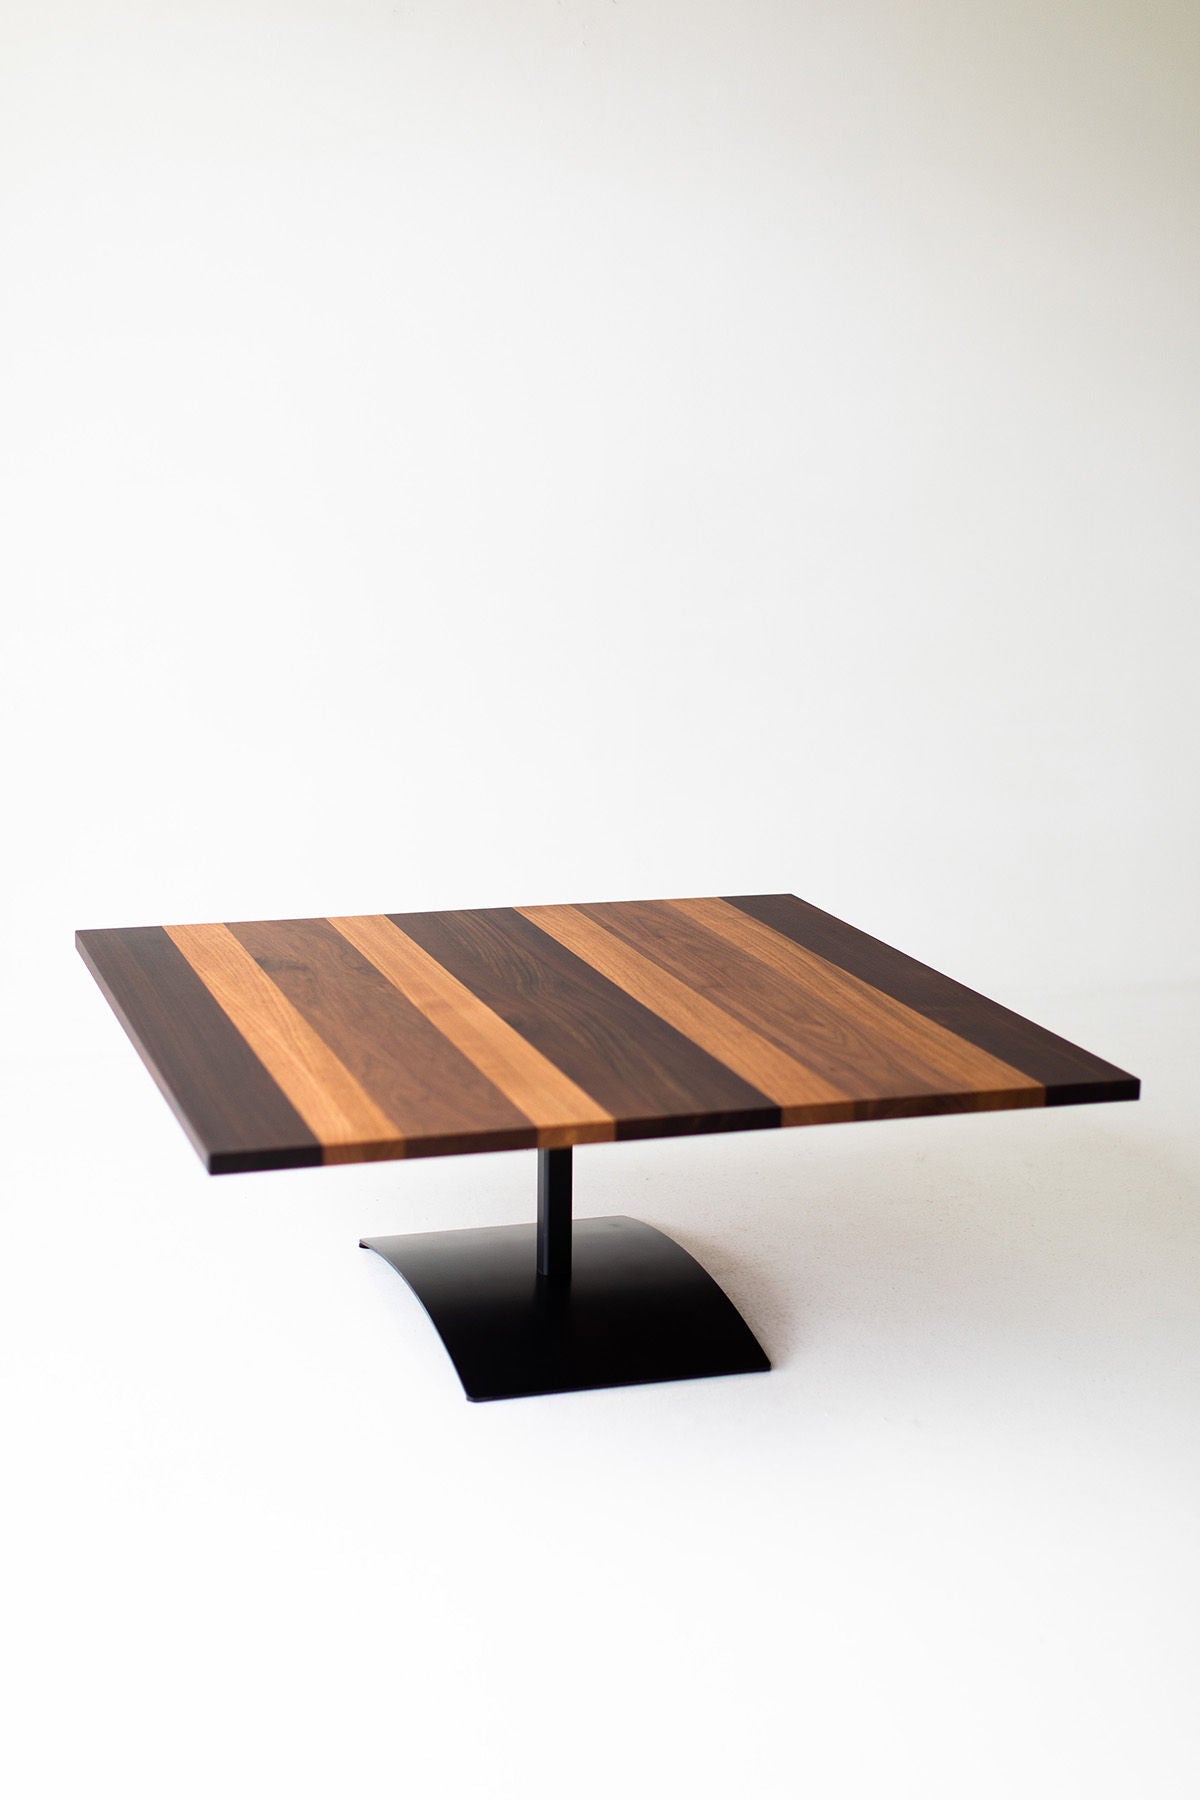 Milo-Baughman-Striped-Top-Coffee-Table-B3933-08